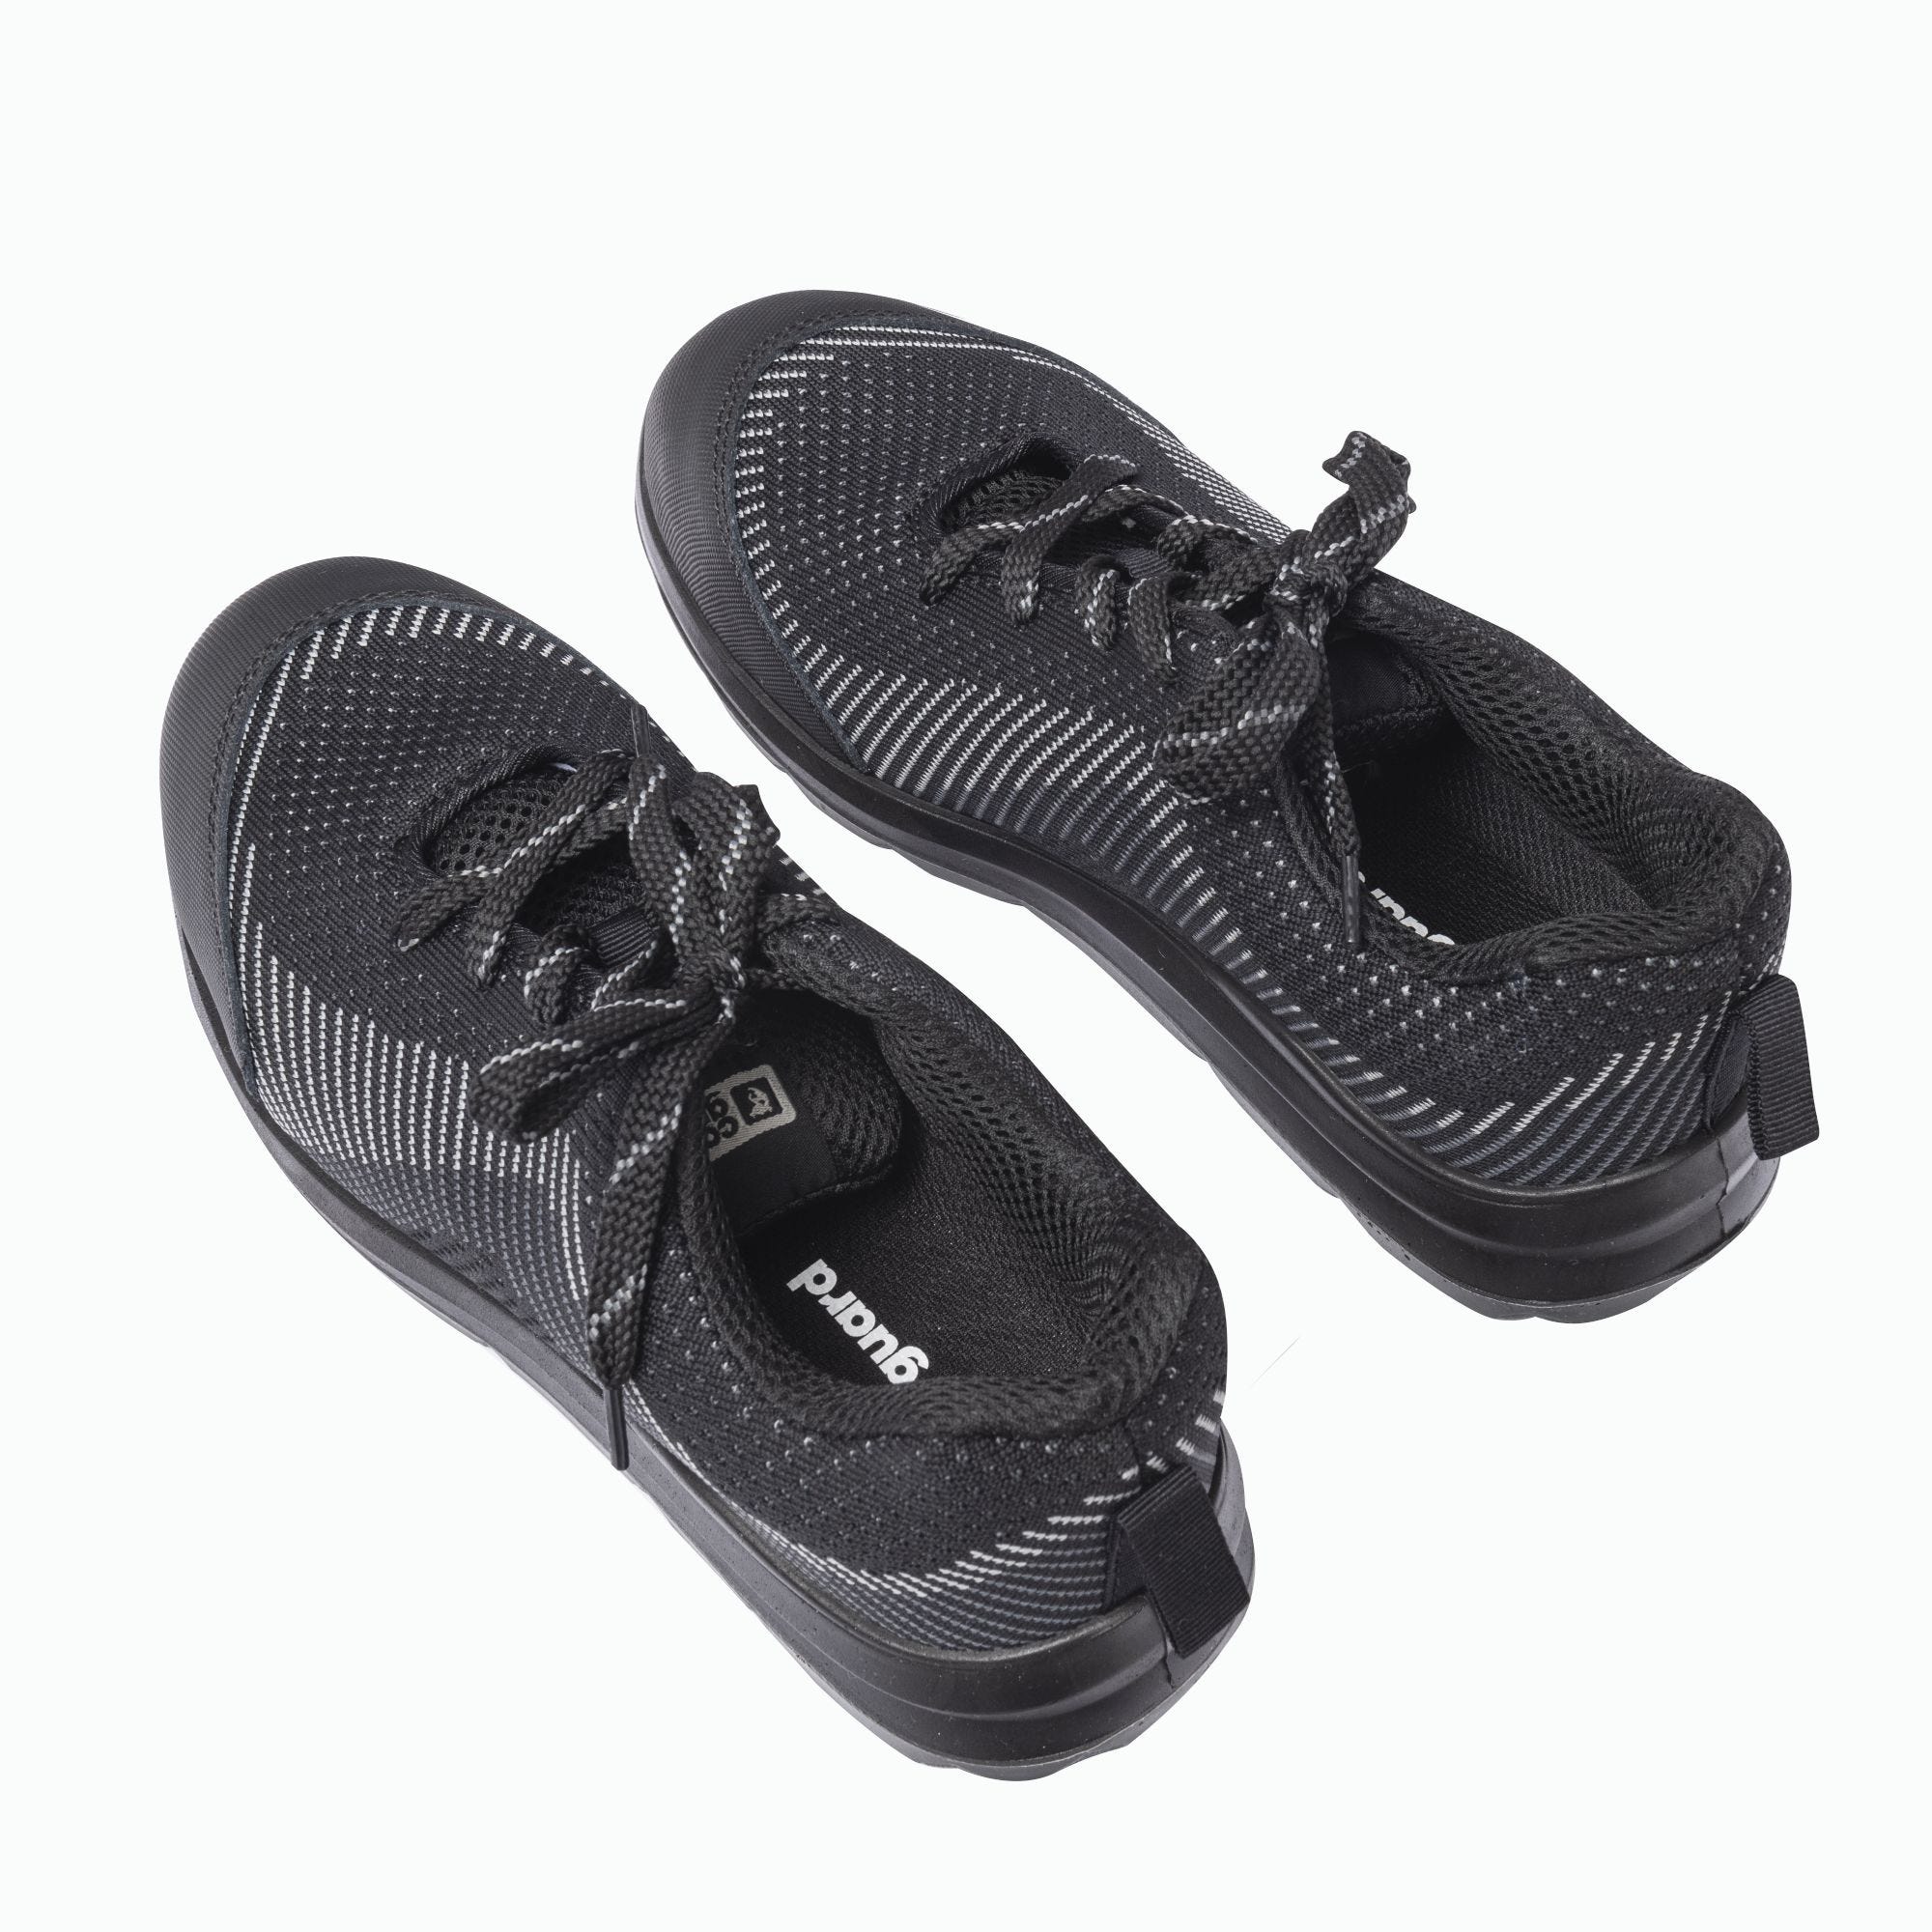 Chaussures de sécurité MILERITE S1P Basse Noir/Gris - COVERGUARD - Taille 41 4